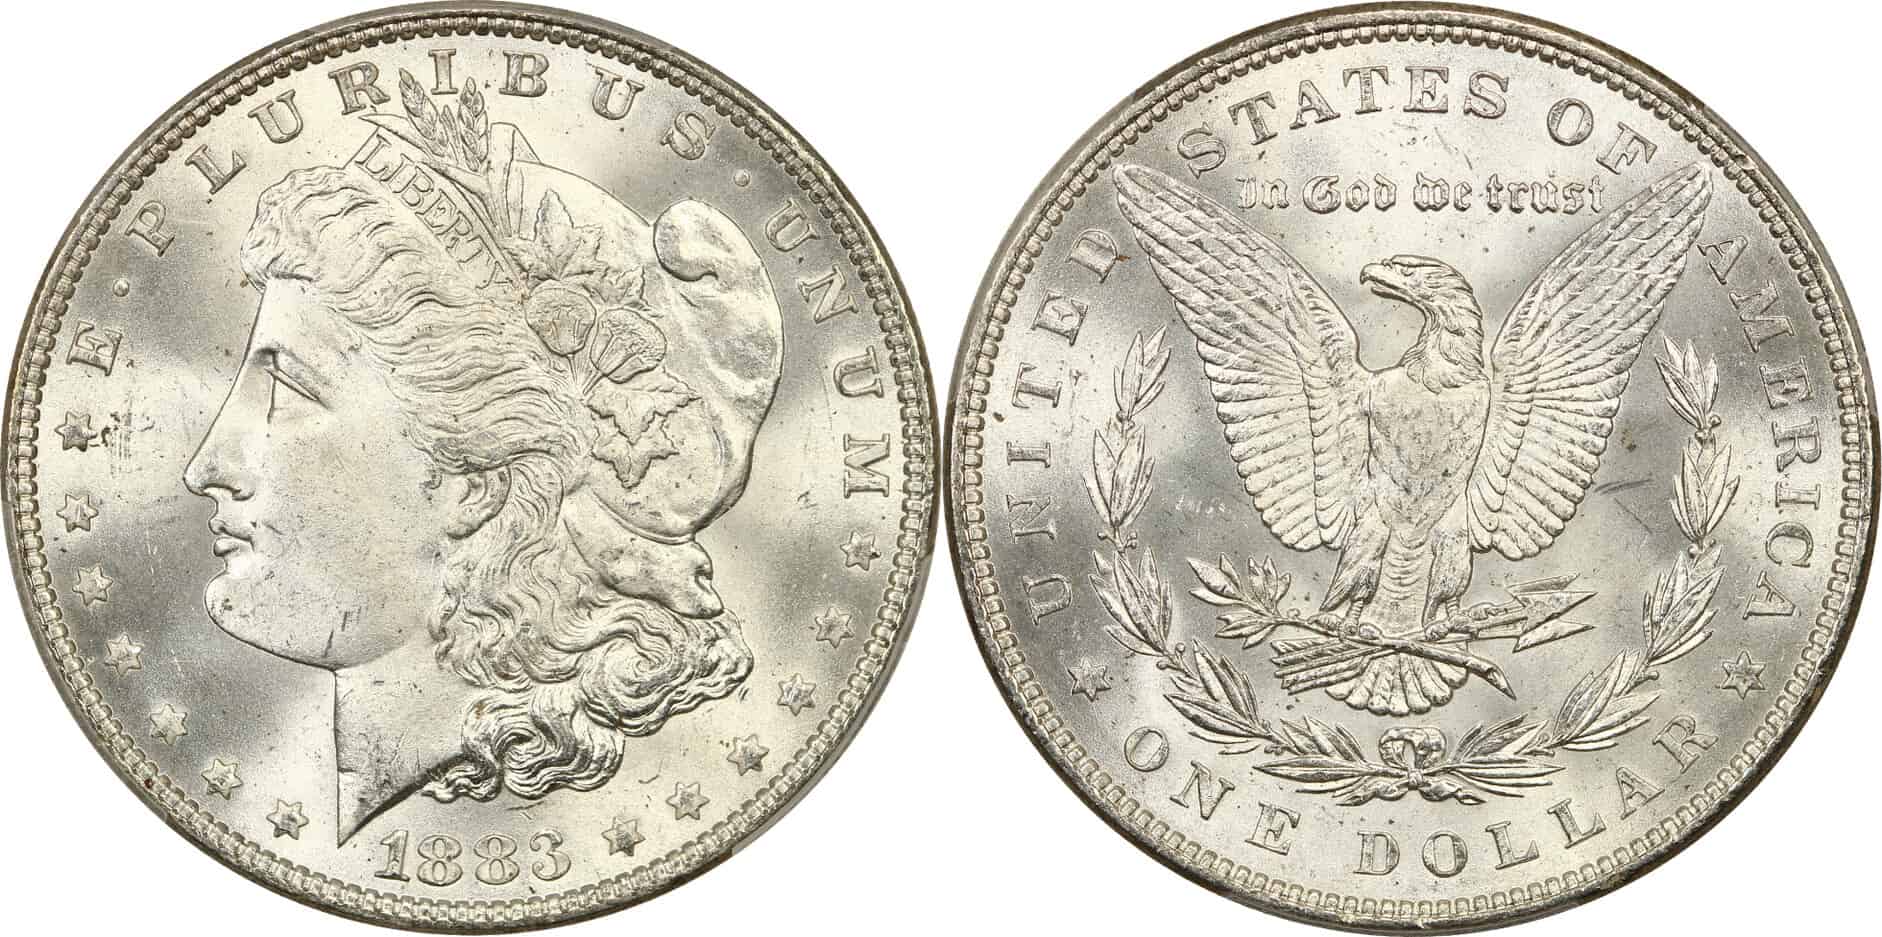 1883 Silver Dollar Value Guides (Rare Errors, “S”, “O”, “CC” & No Mint Mark)